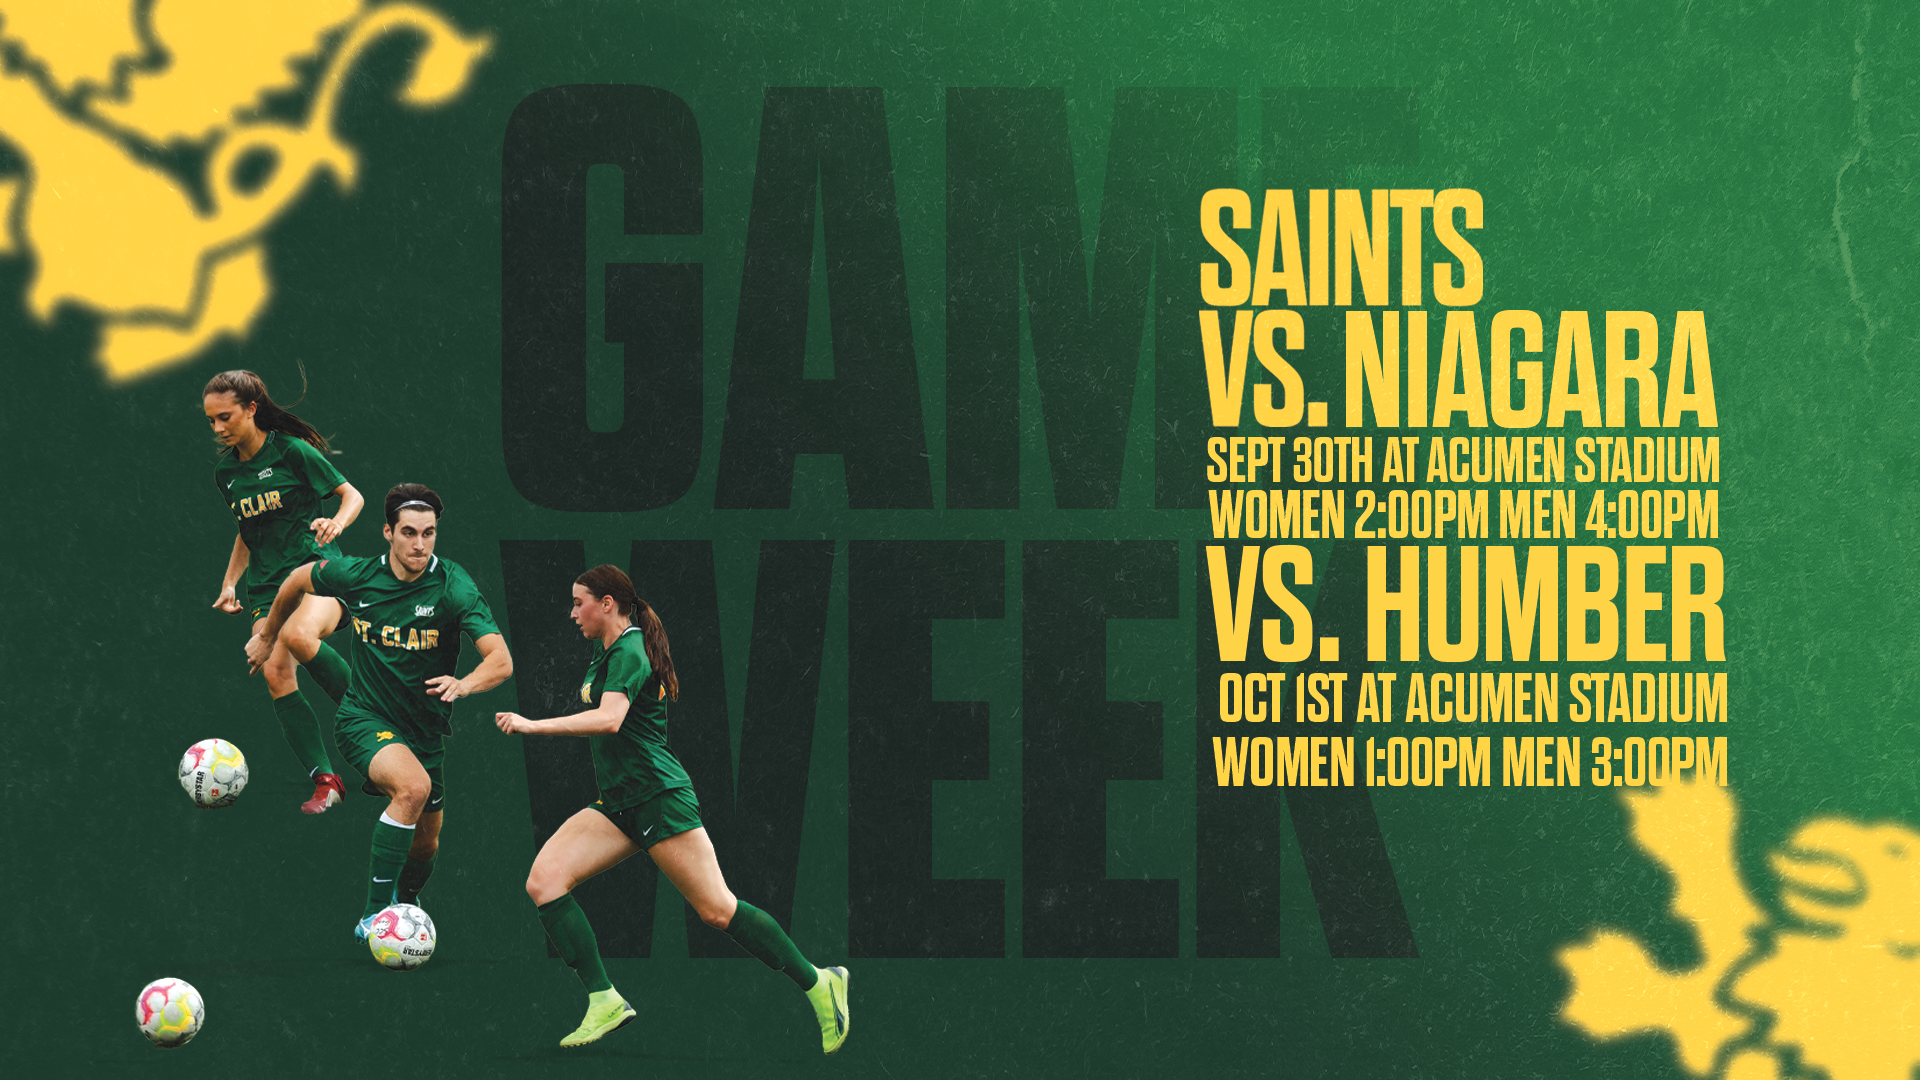 Big Weekend for Saints Soccer Teams